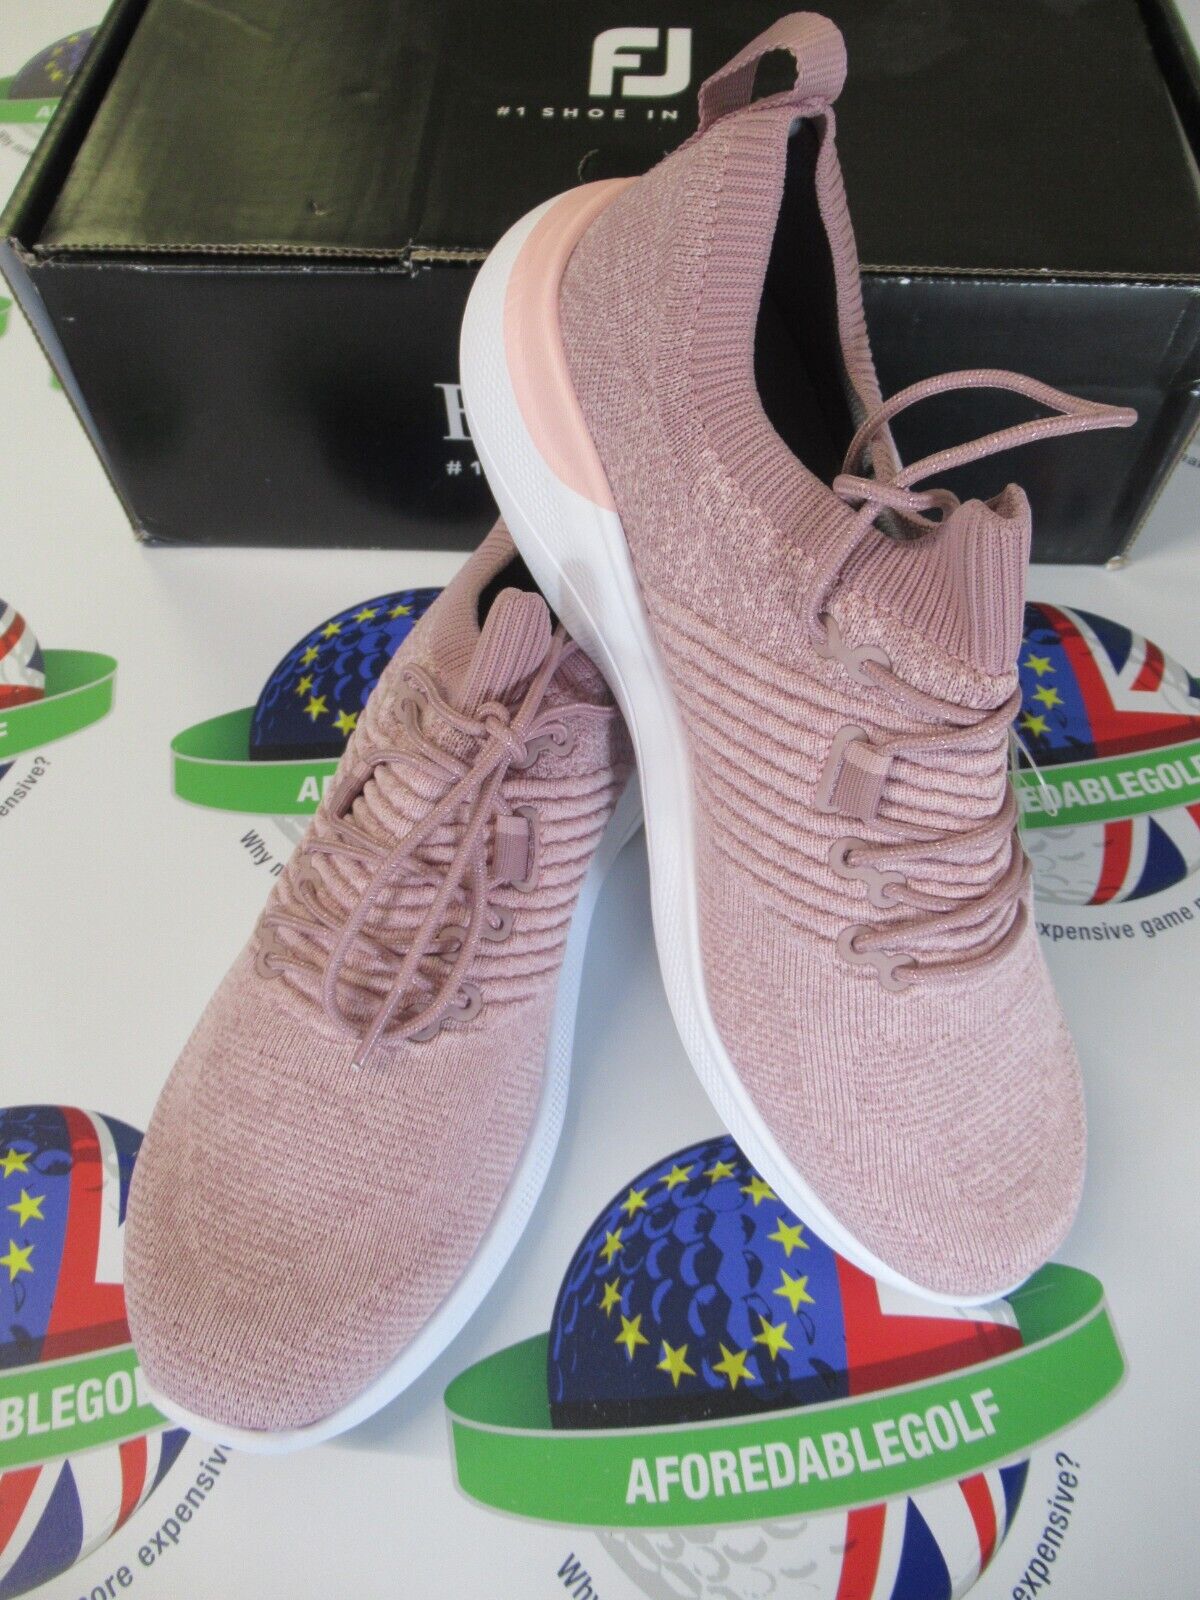 footjoy flex xp womens golf shoes pink heather 95335k uk size 7 medium